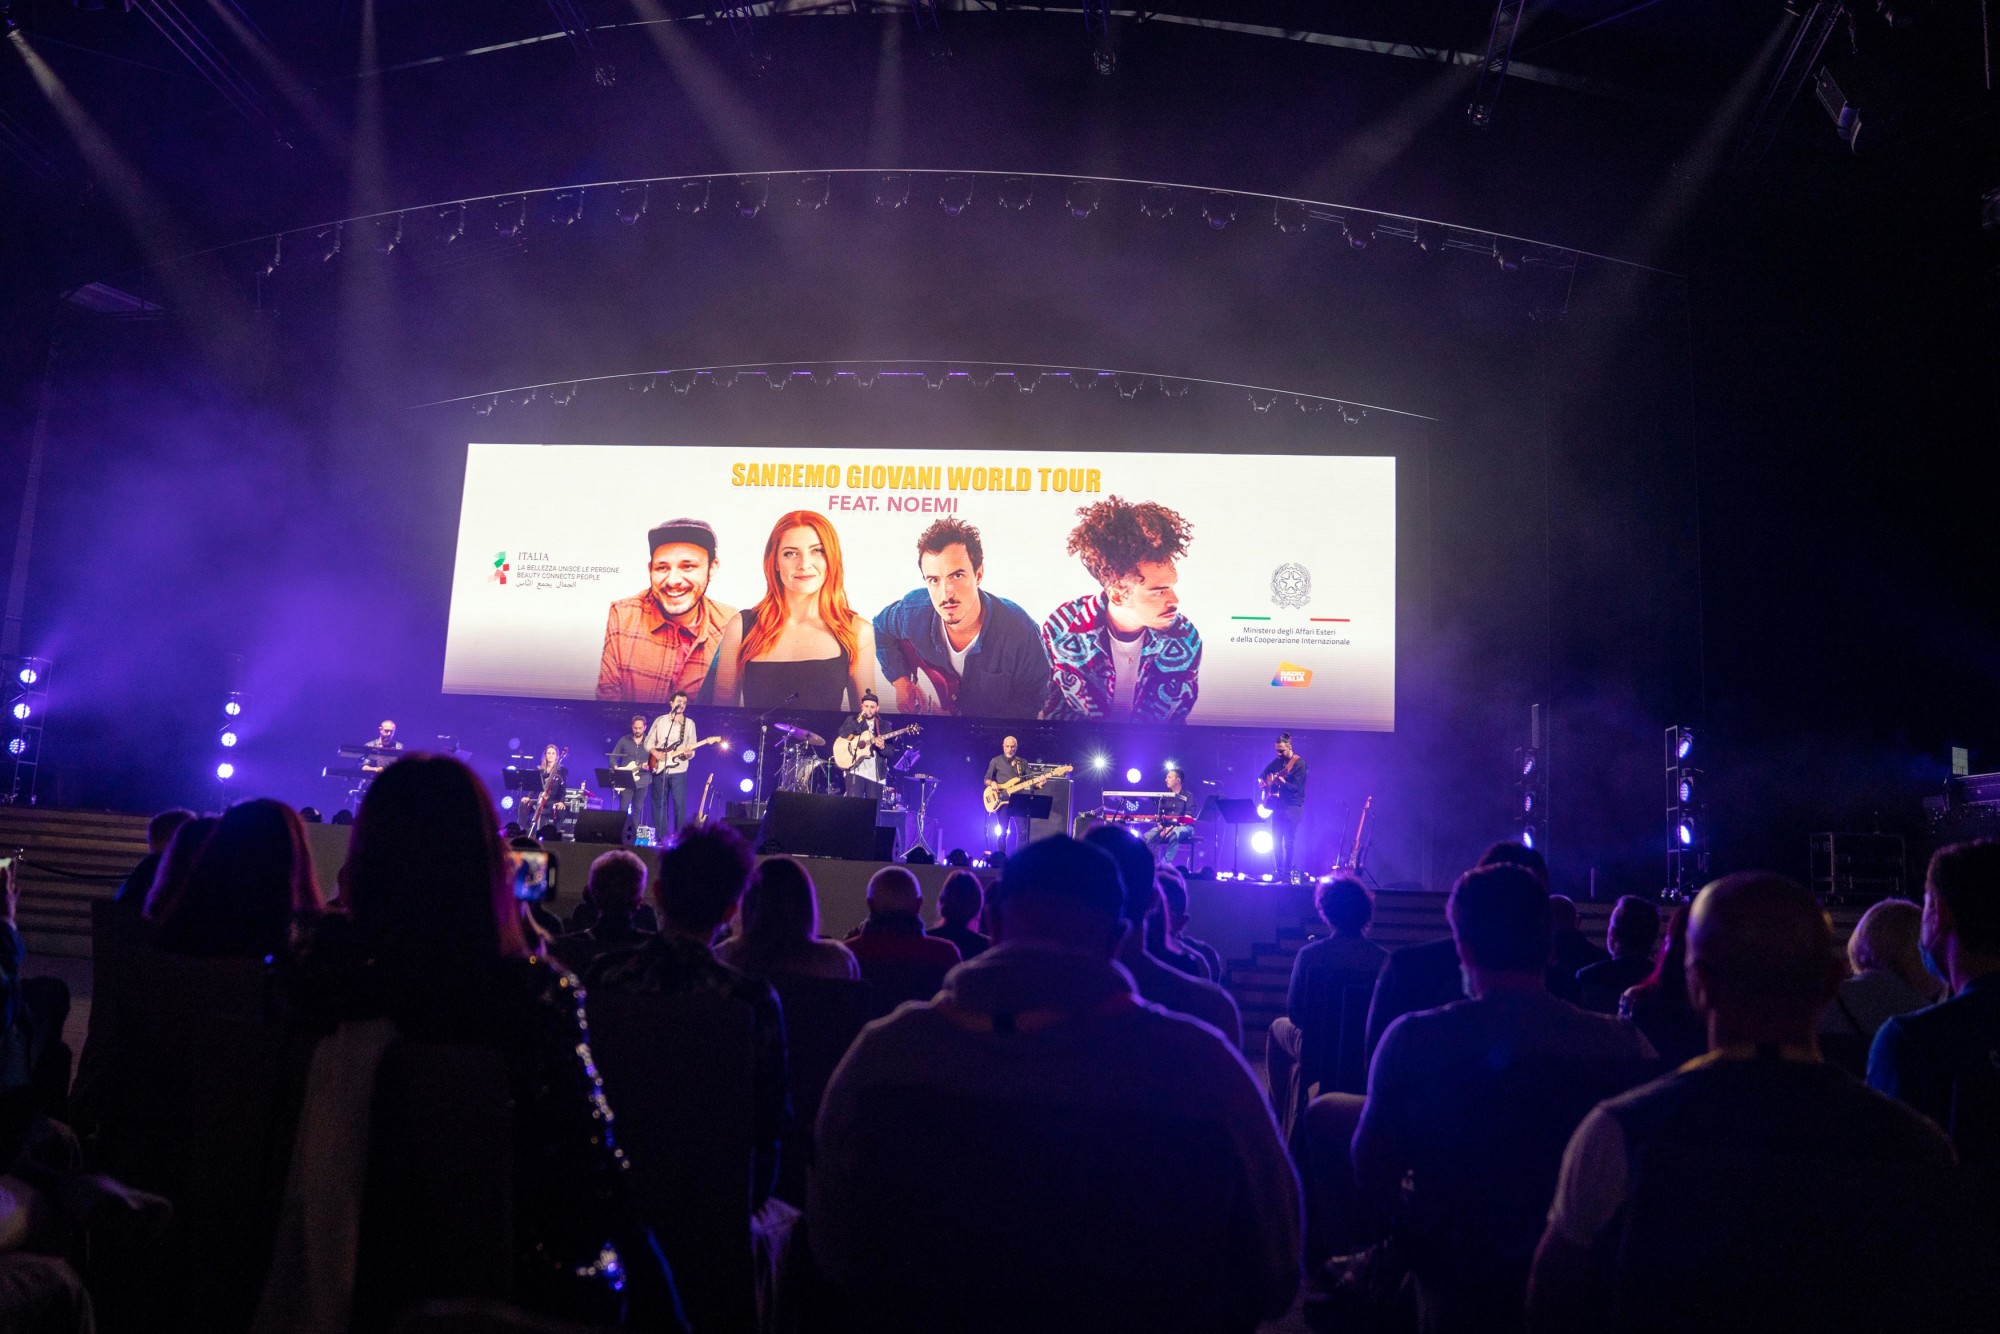 Sanremo Giovani featuring Noemi perform at Dubai Millennium Amphitheatre m25970